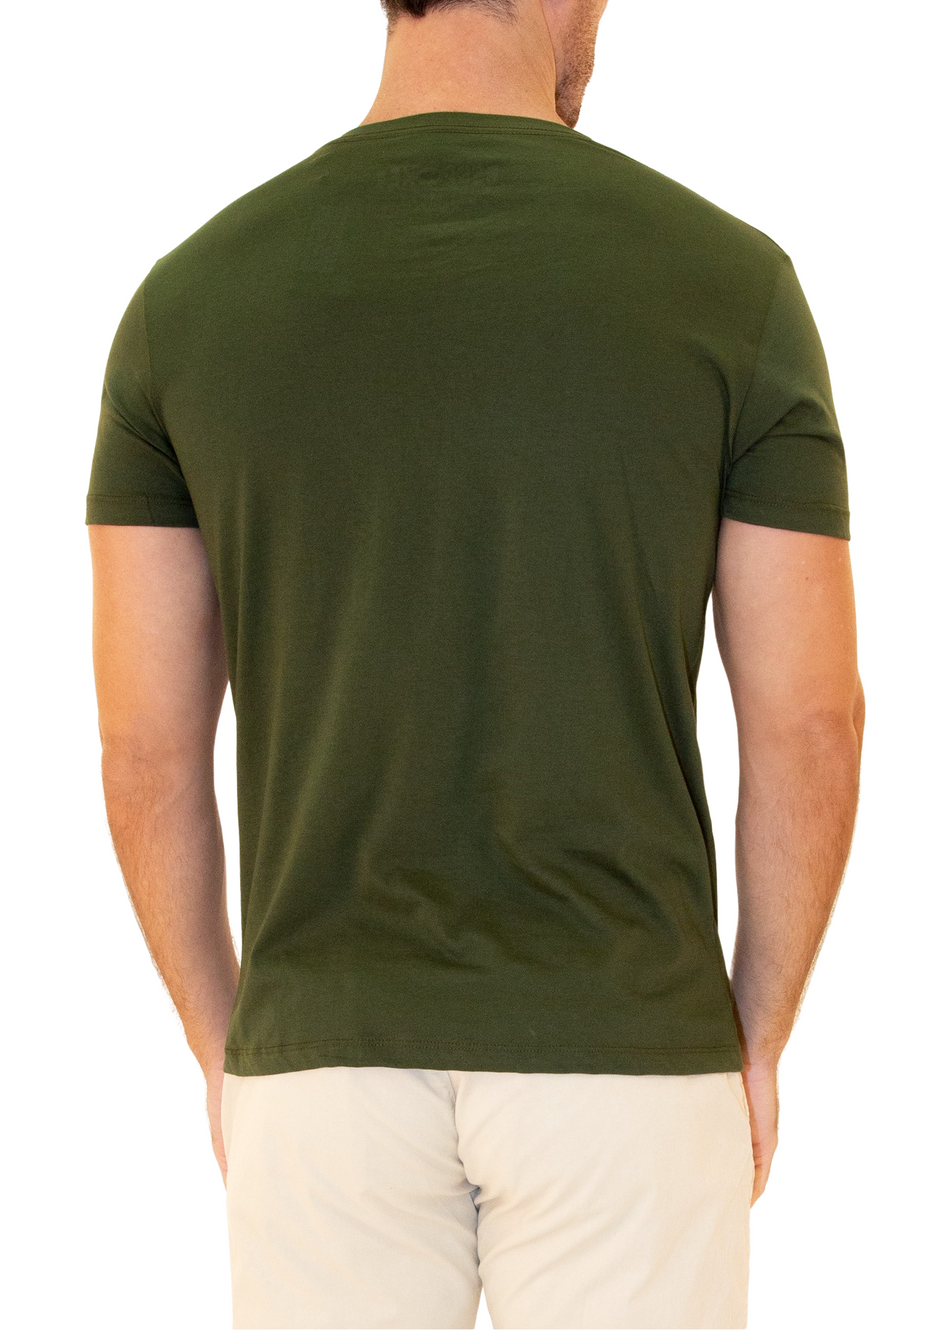 Men's Essentials Cotton V-Neck Solid Olive Green